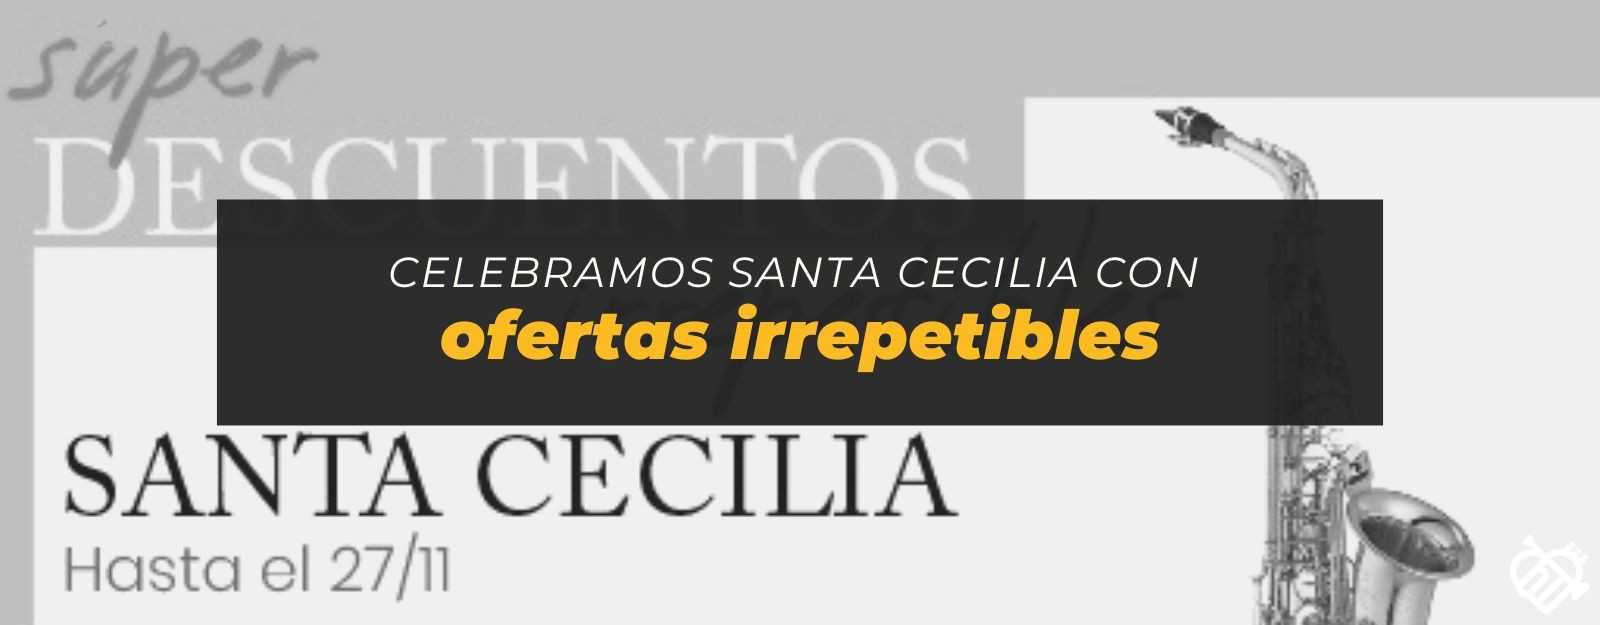 Ofertas irrepetibles por Santa Cecilia en Instrumentomanía